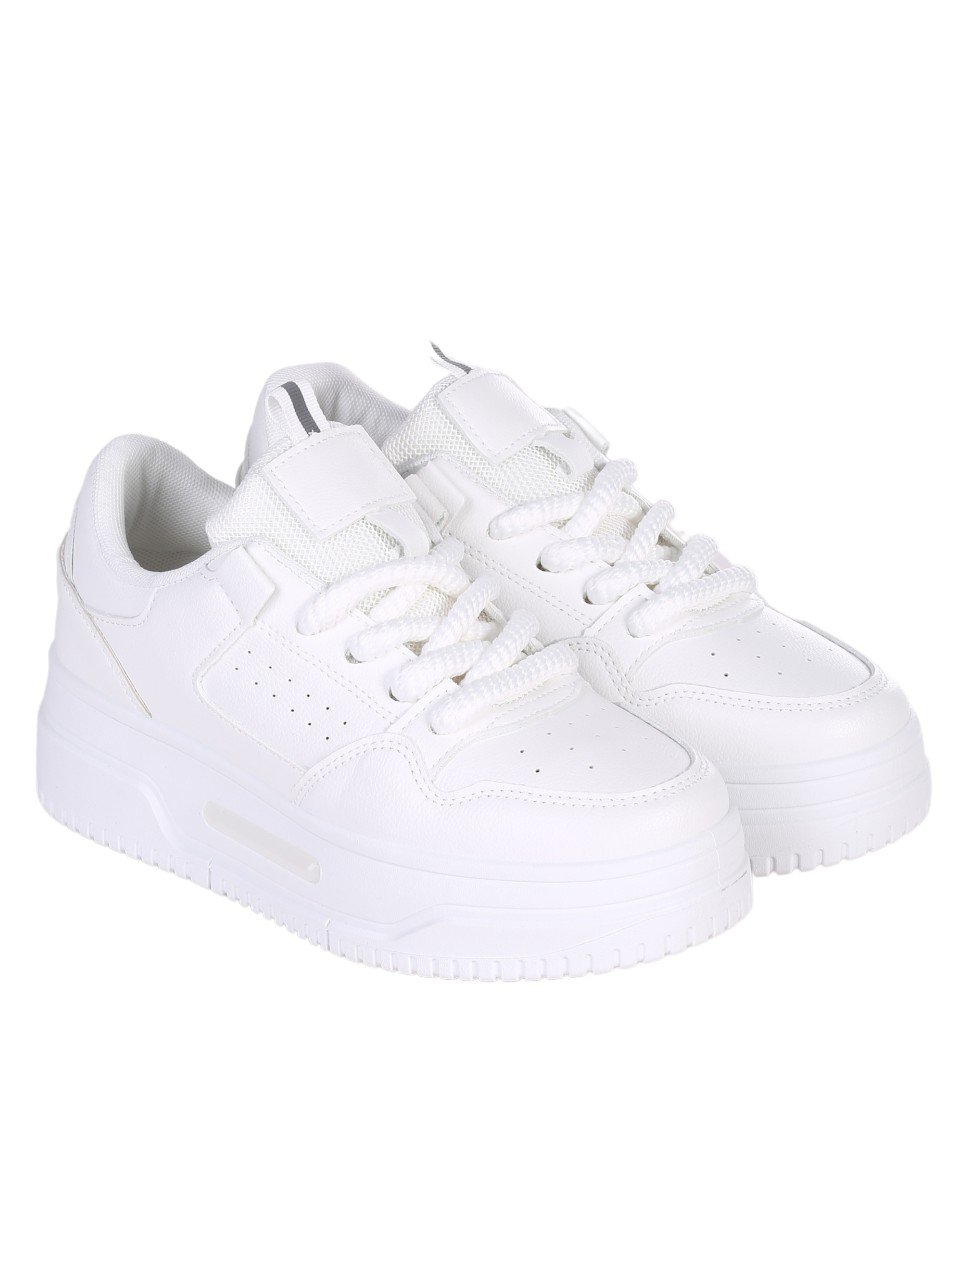 Eжедневни дамски обувки в бяло 3U-24006 all white